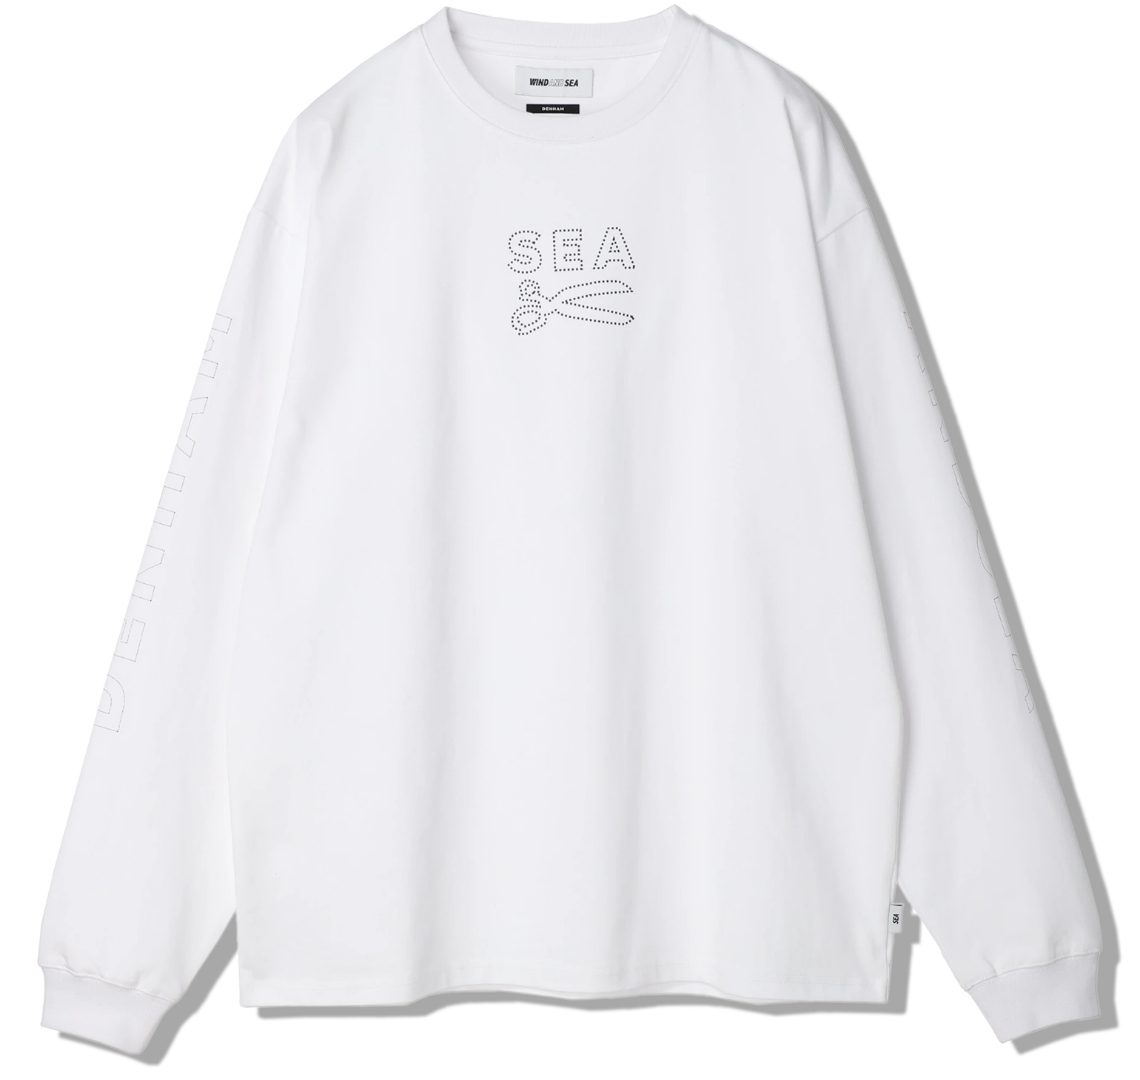 9,000円wind and sea denham TEE white Mサイズ